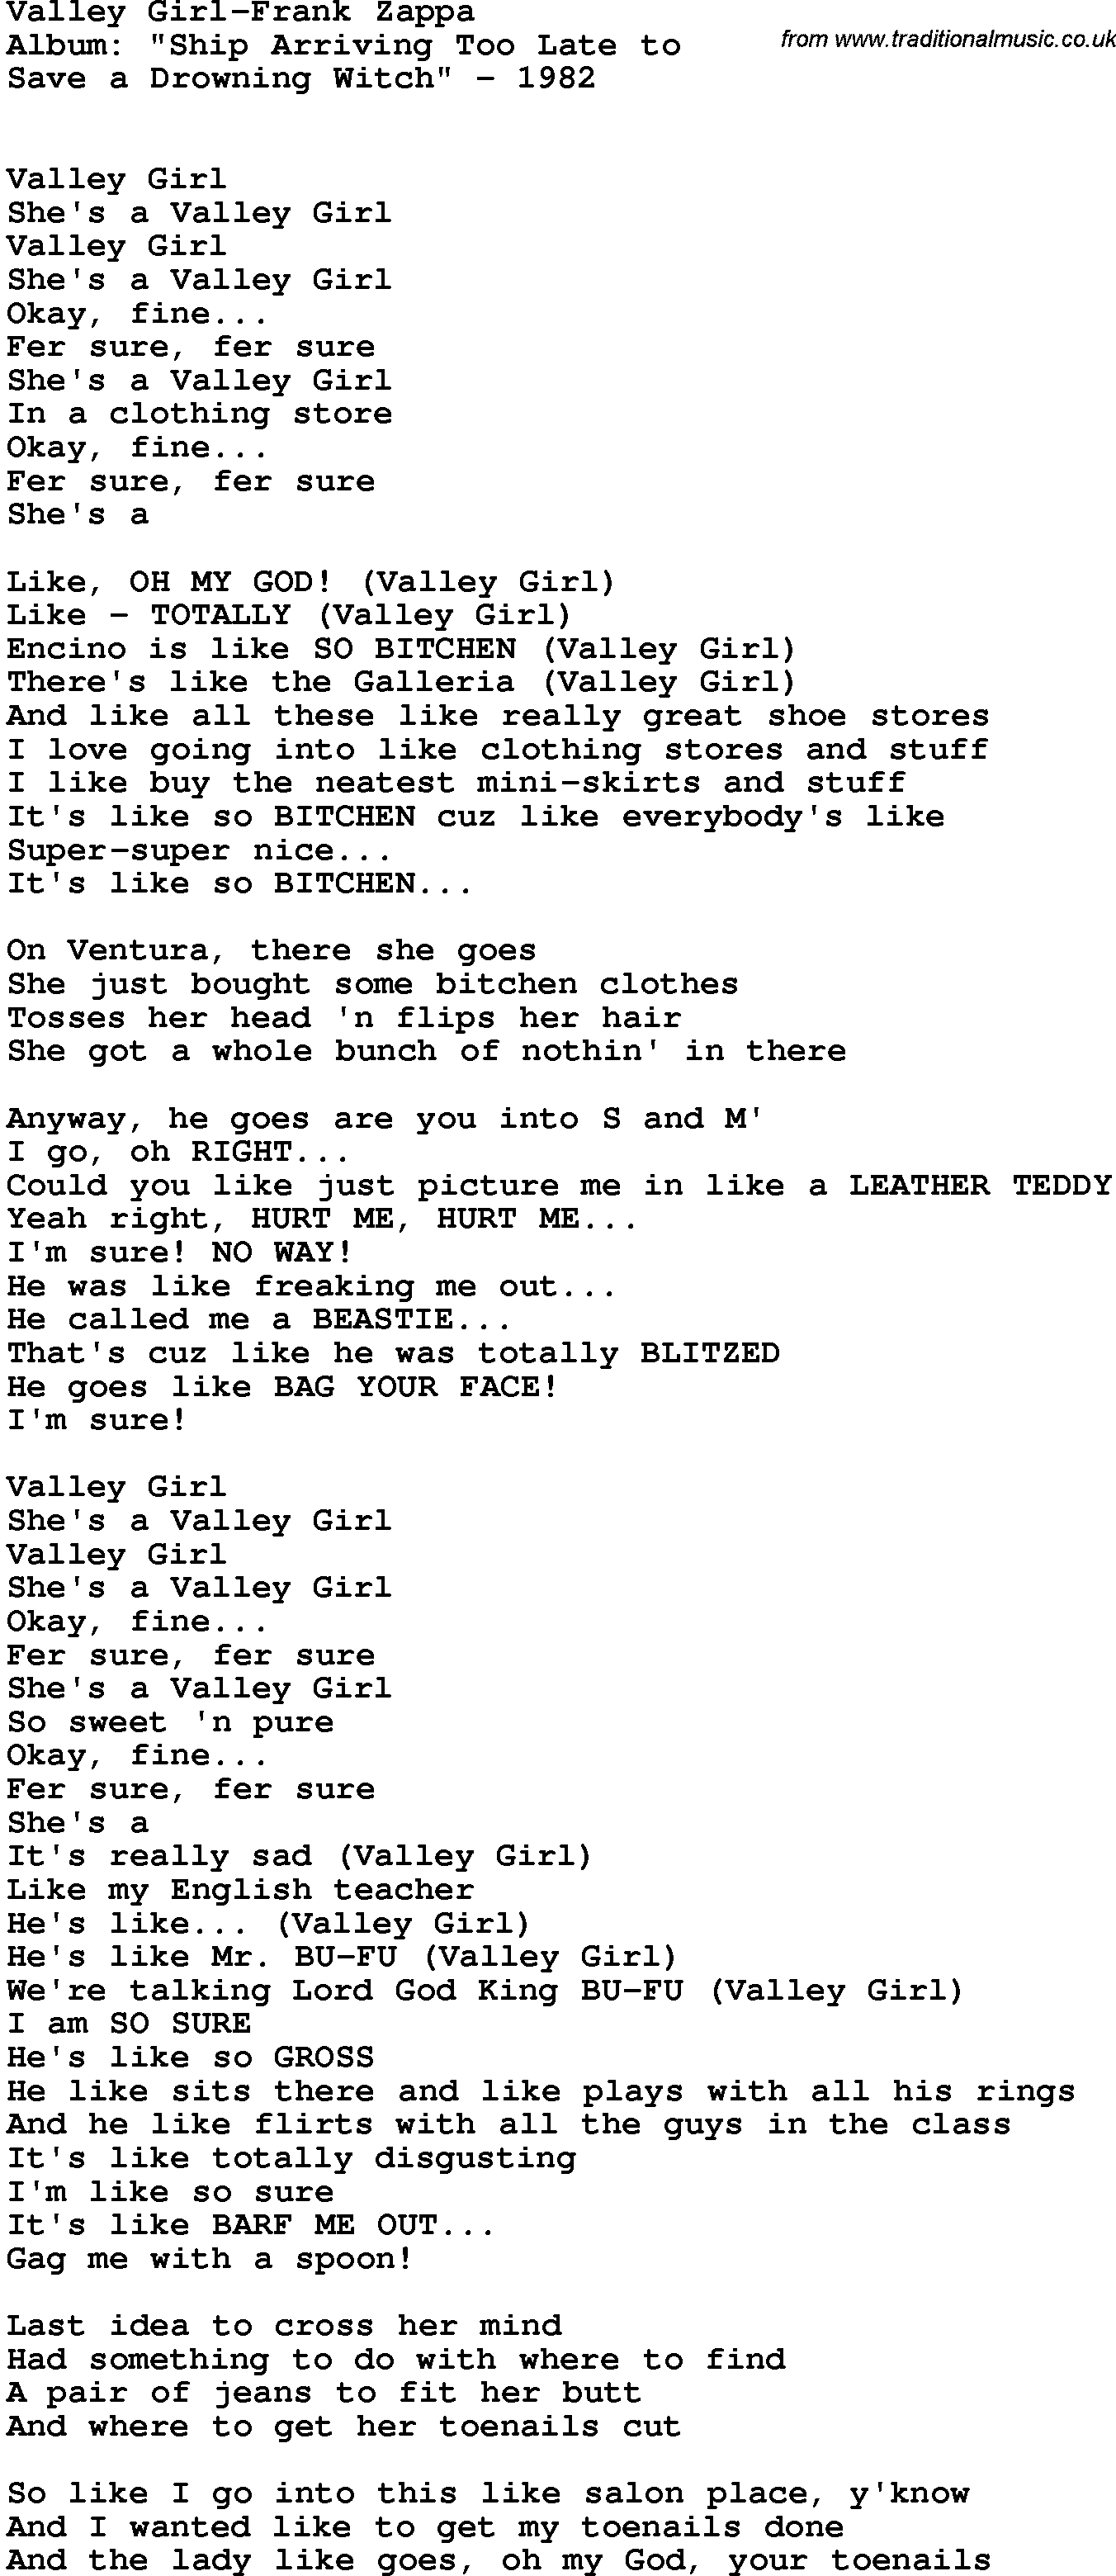 Novelty song: Valley Girl-Frank Zappa lyrics